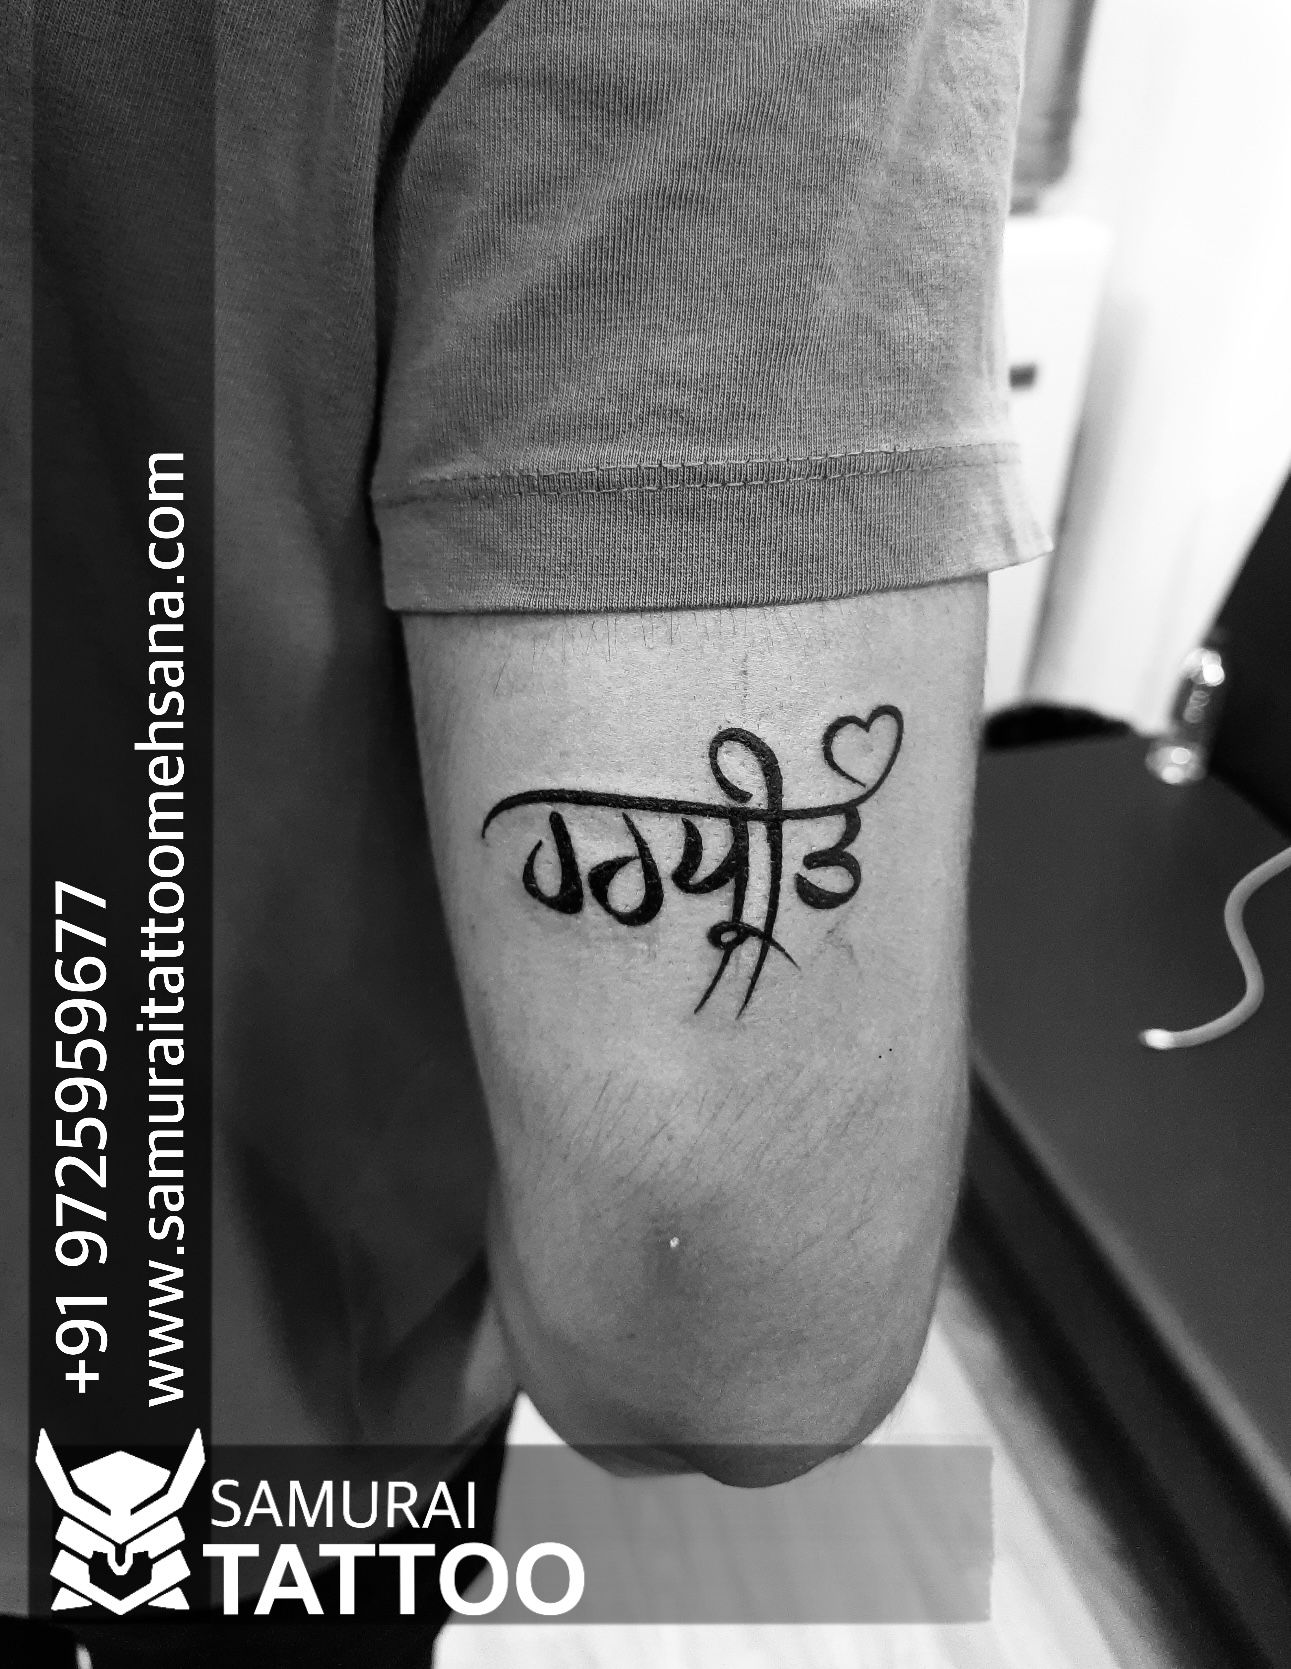 Punjabi name tattoo  Brother tattoos Name tattoo Writing tattoos